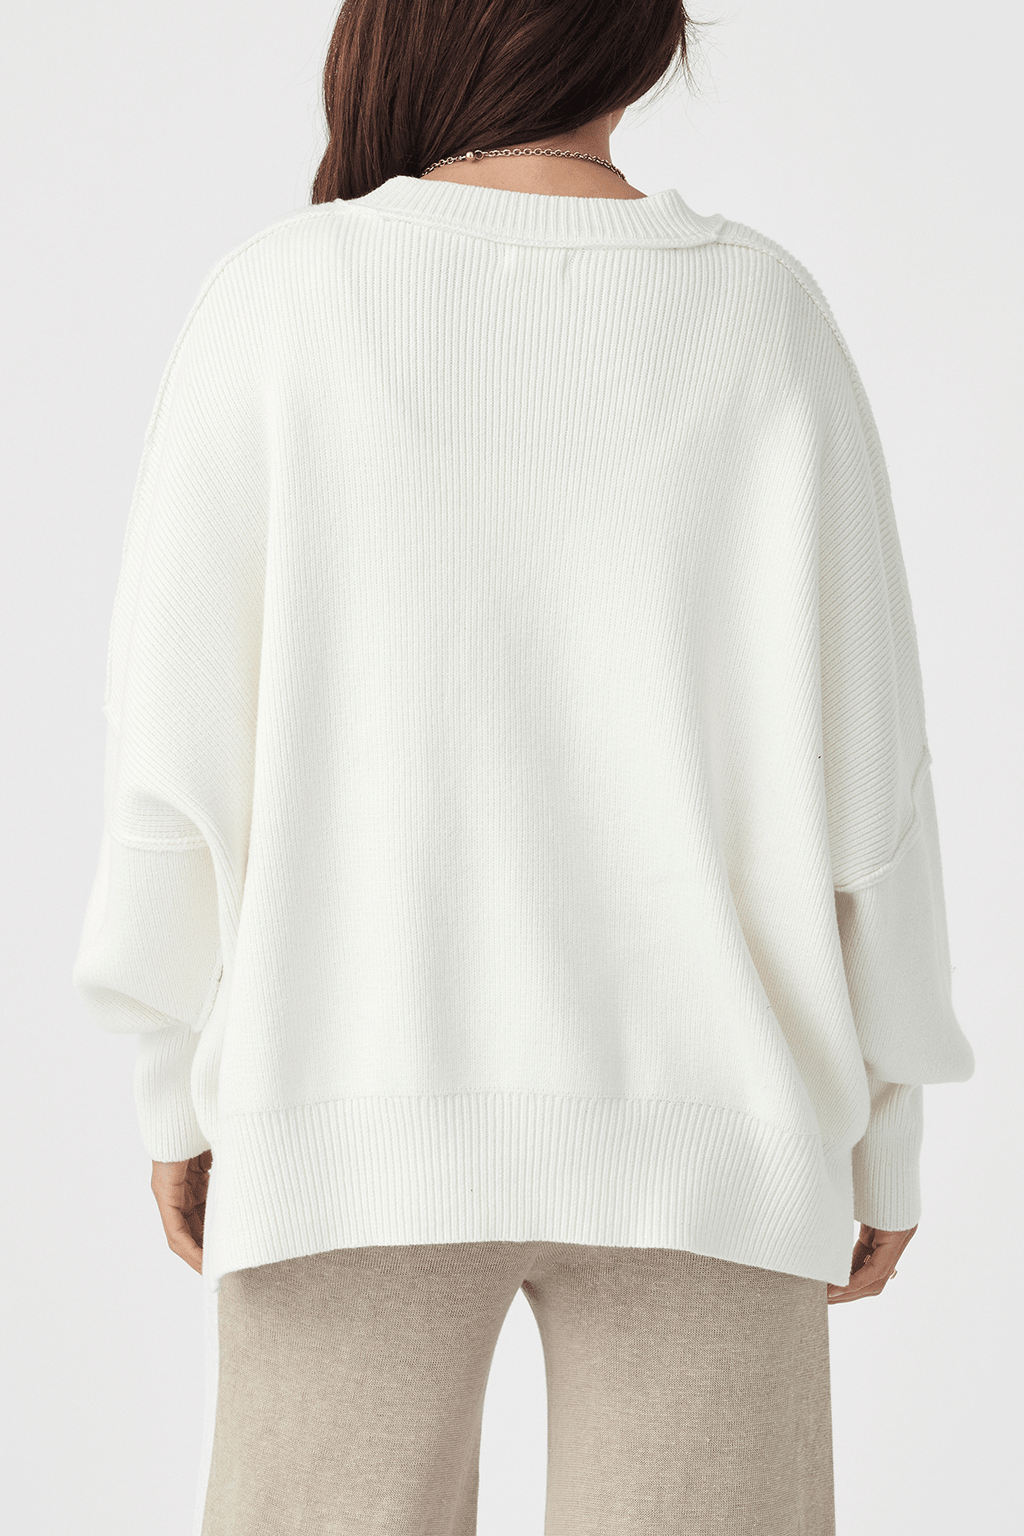 Harper Oragnic Knit Sweater - Cream